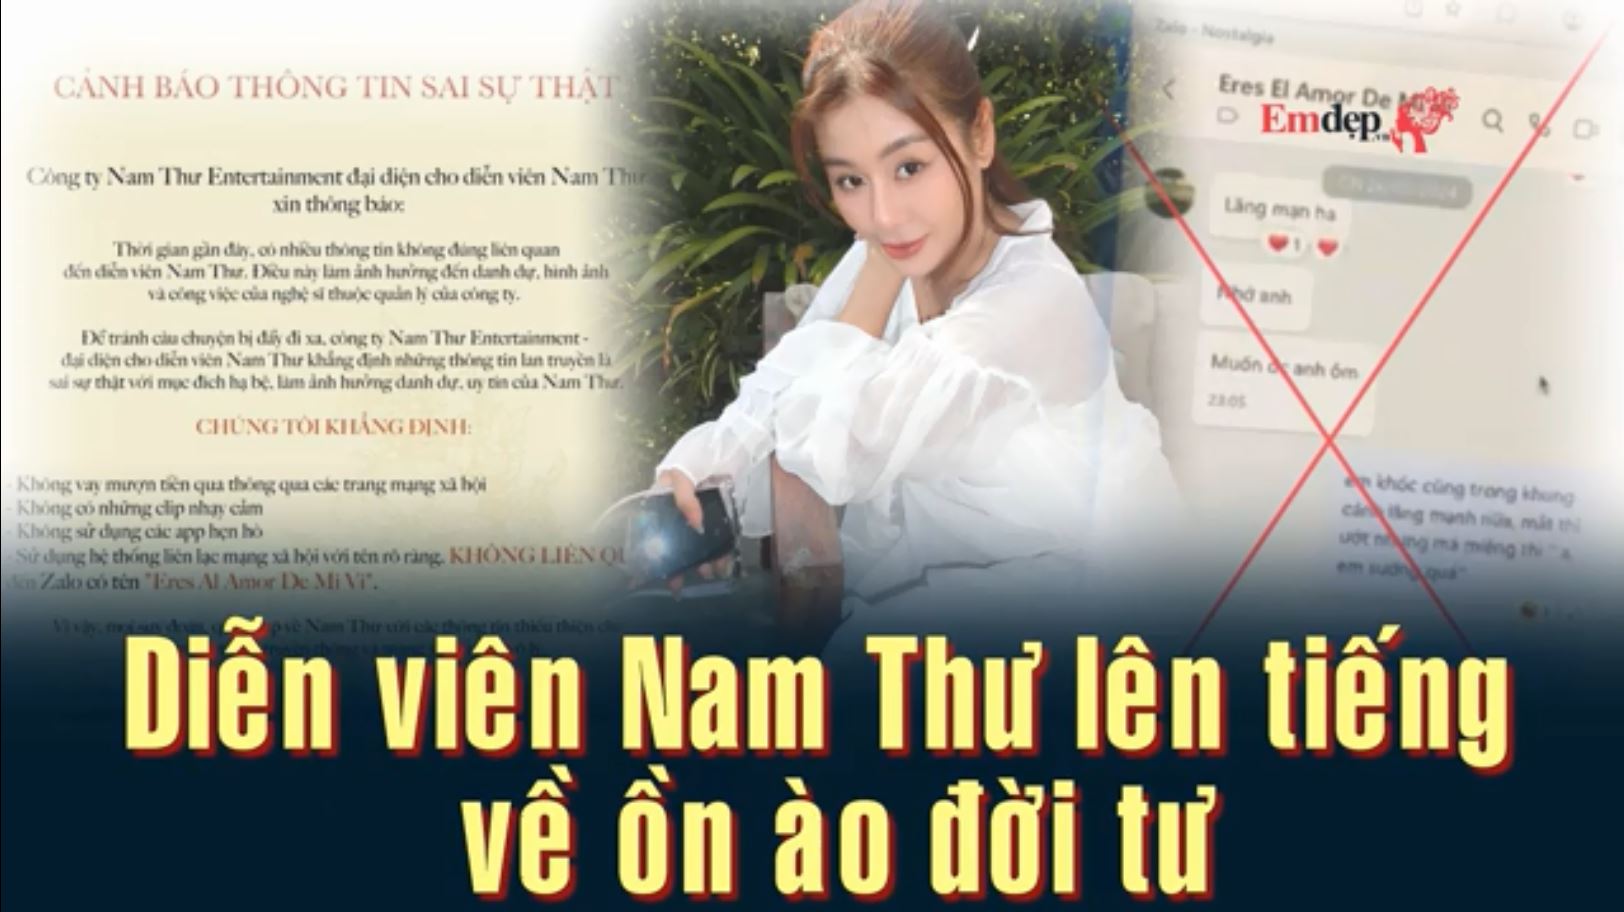 Diễn viên Nam Thư lên tiếng về ồn ào đời tư